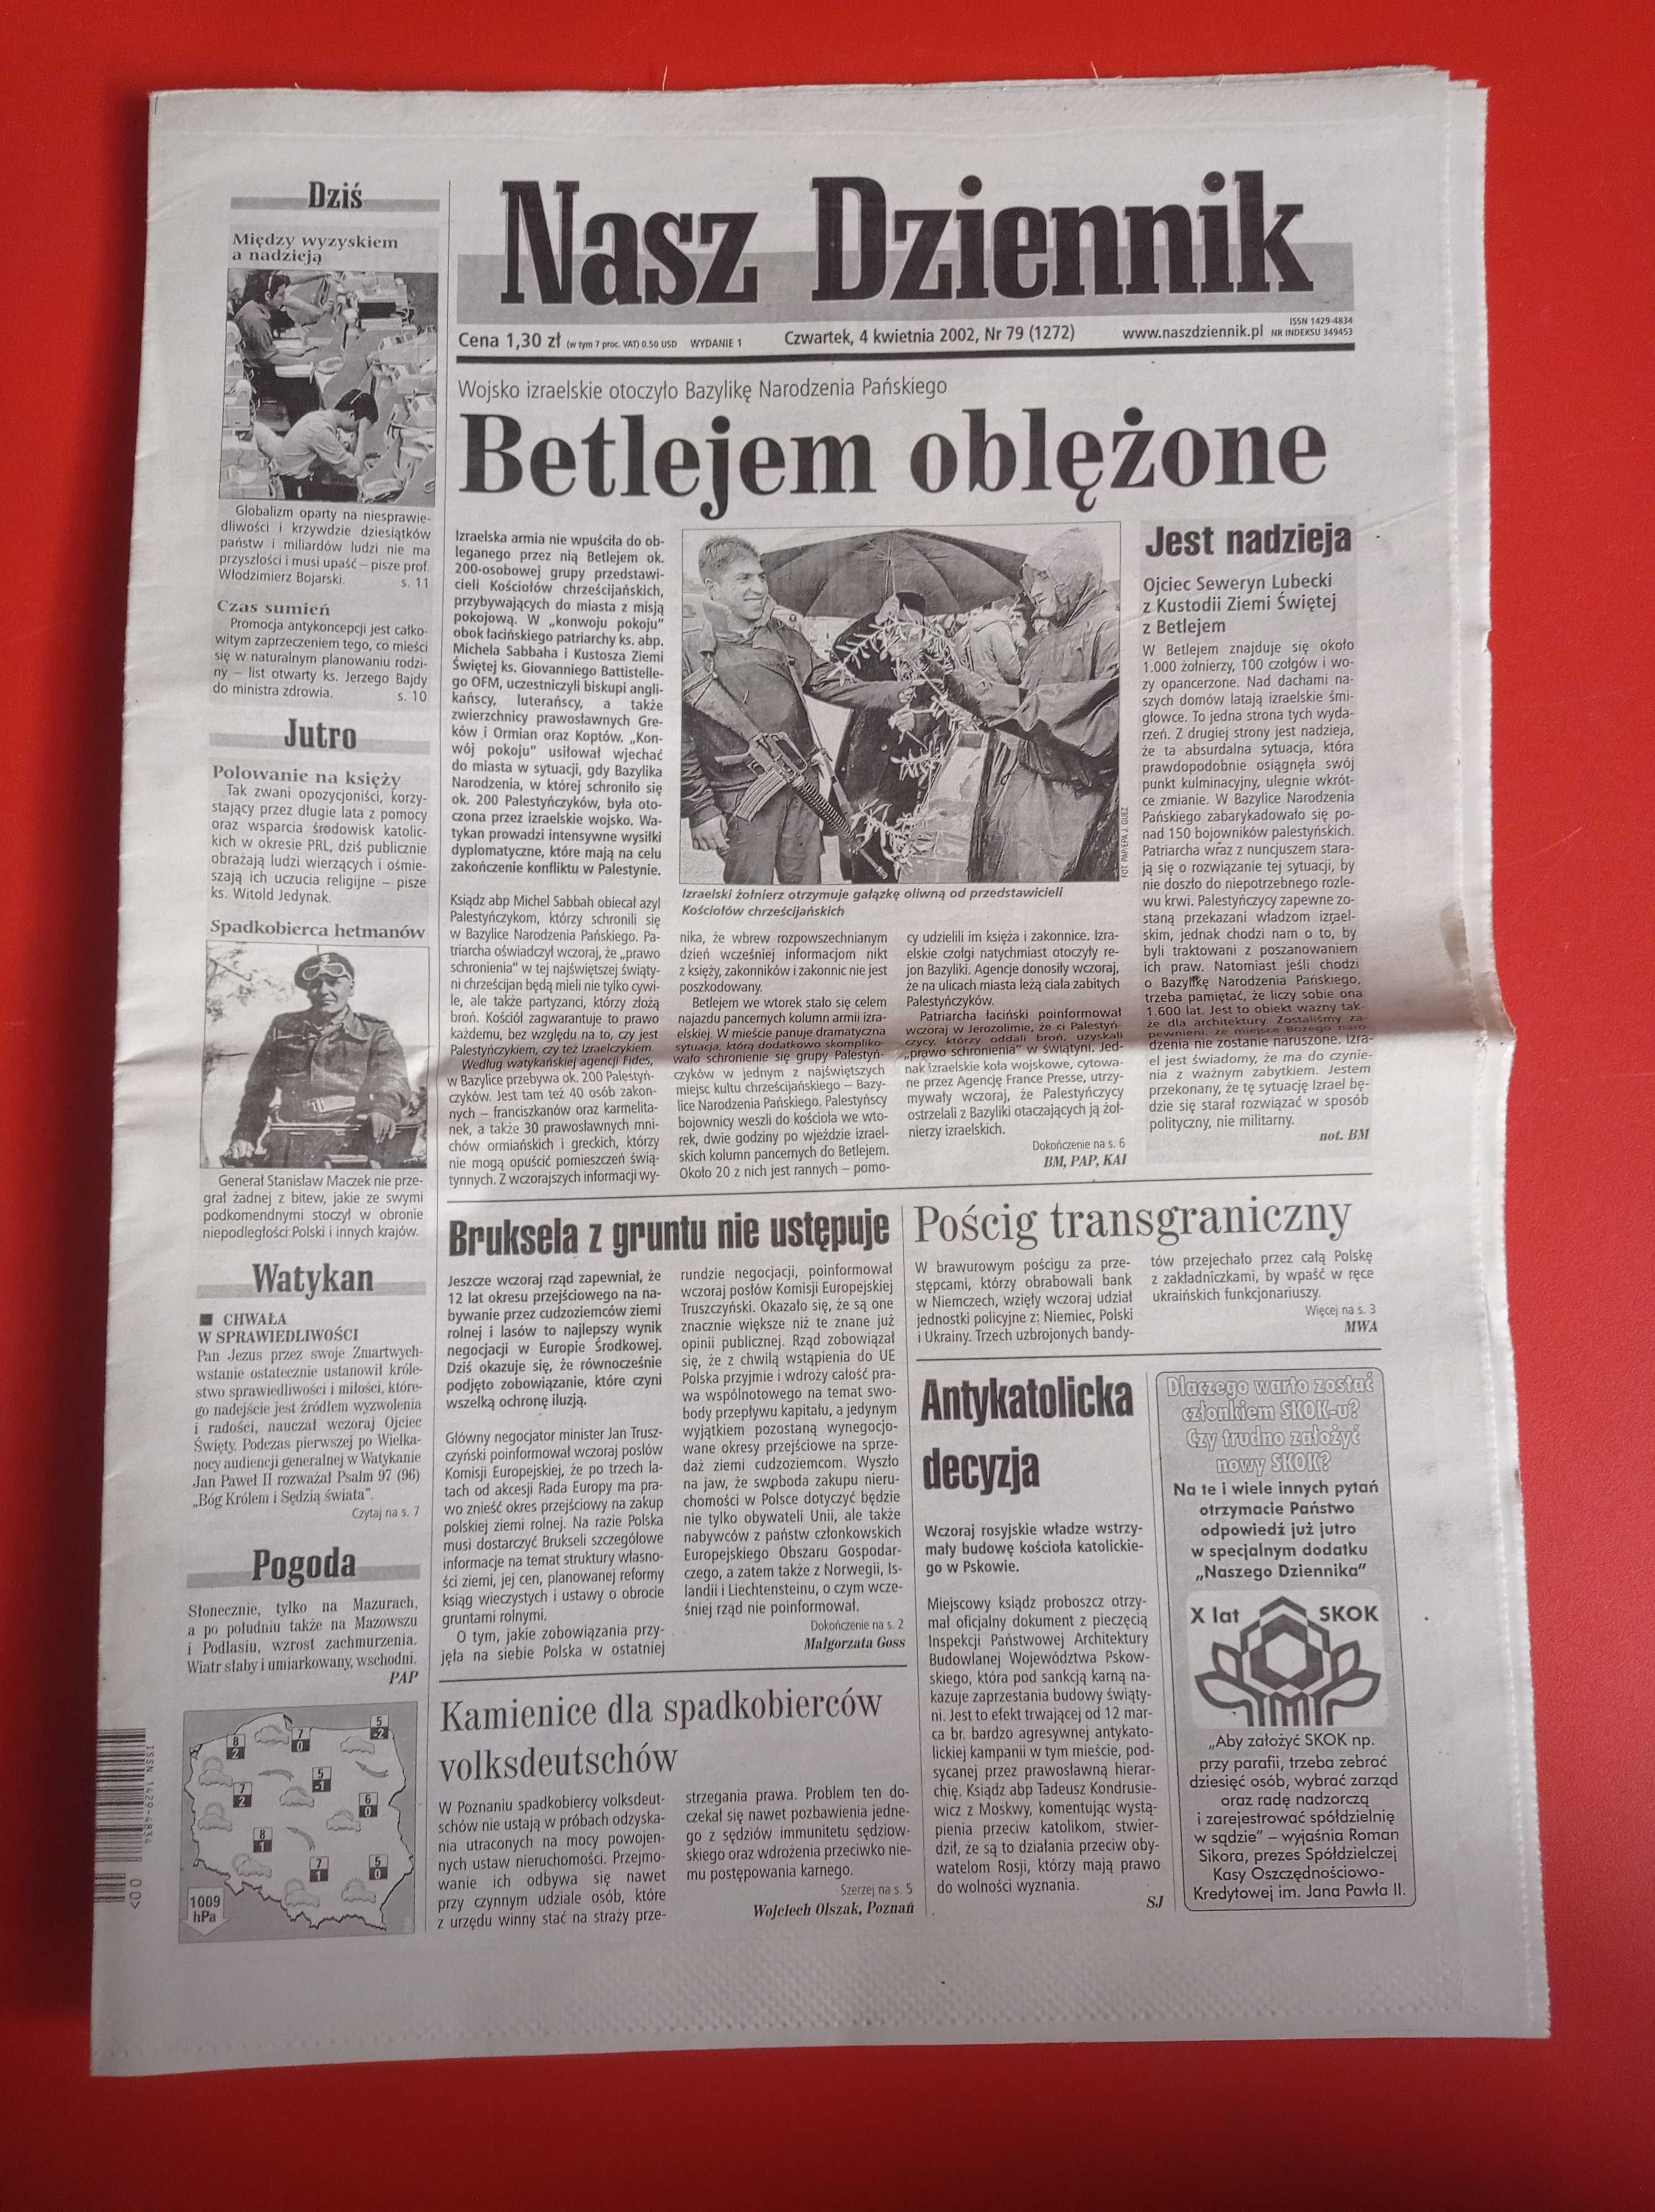 Nasz Dziennik, nr 79/2002, 4 kwietnia 2002